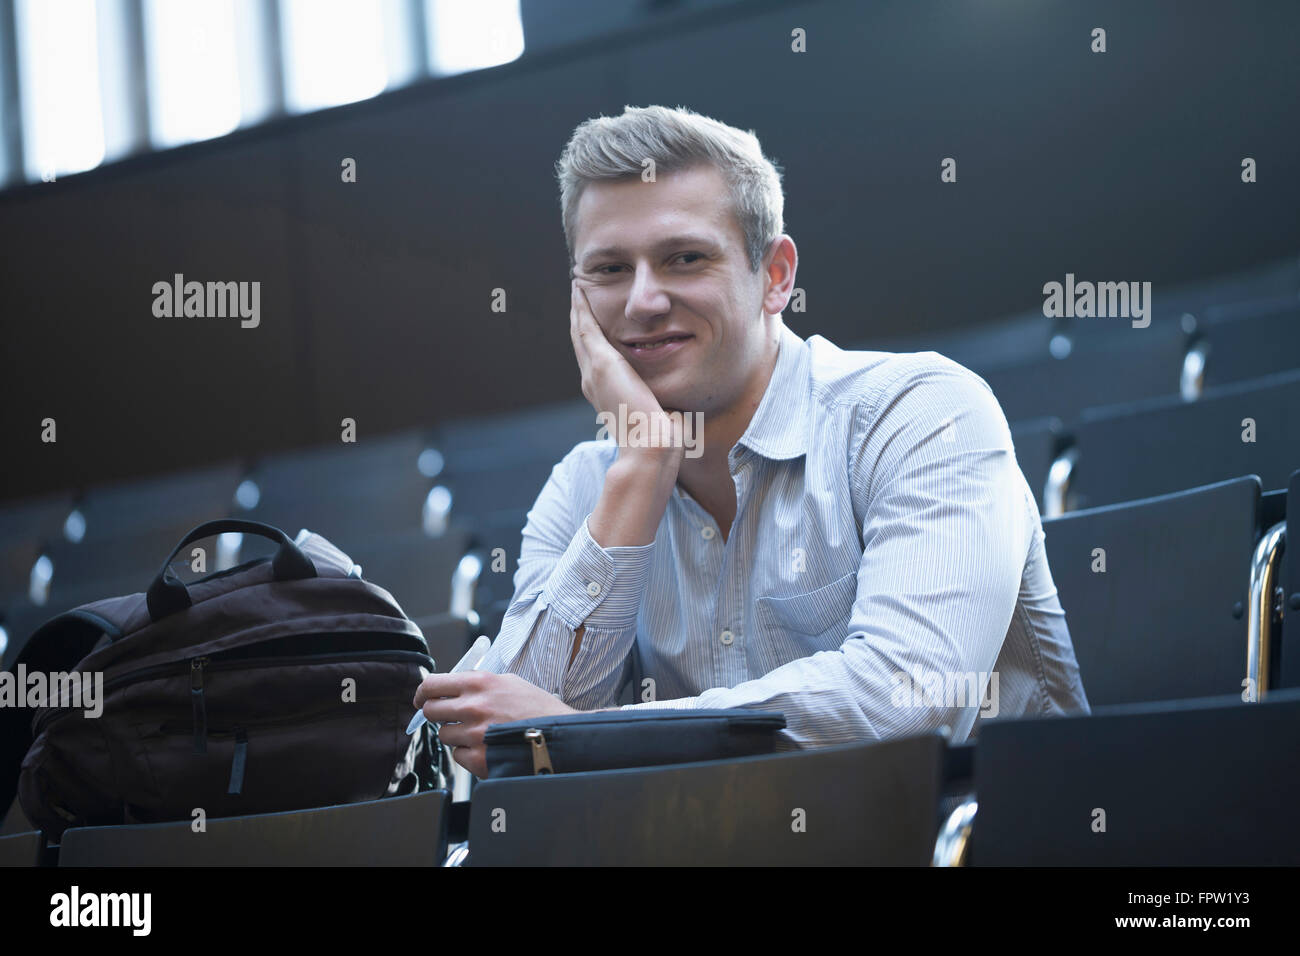 Ritratto di uno studente universitario seduto nella sala conferenze e nella lezione di ascolto, Friburgo in Breisgau, Baden-Württemberg, Germania Foto Stock